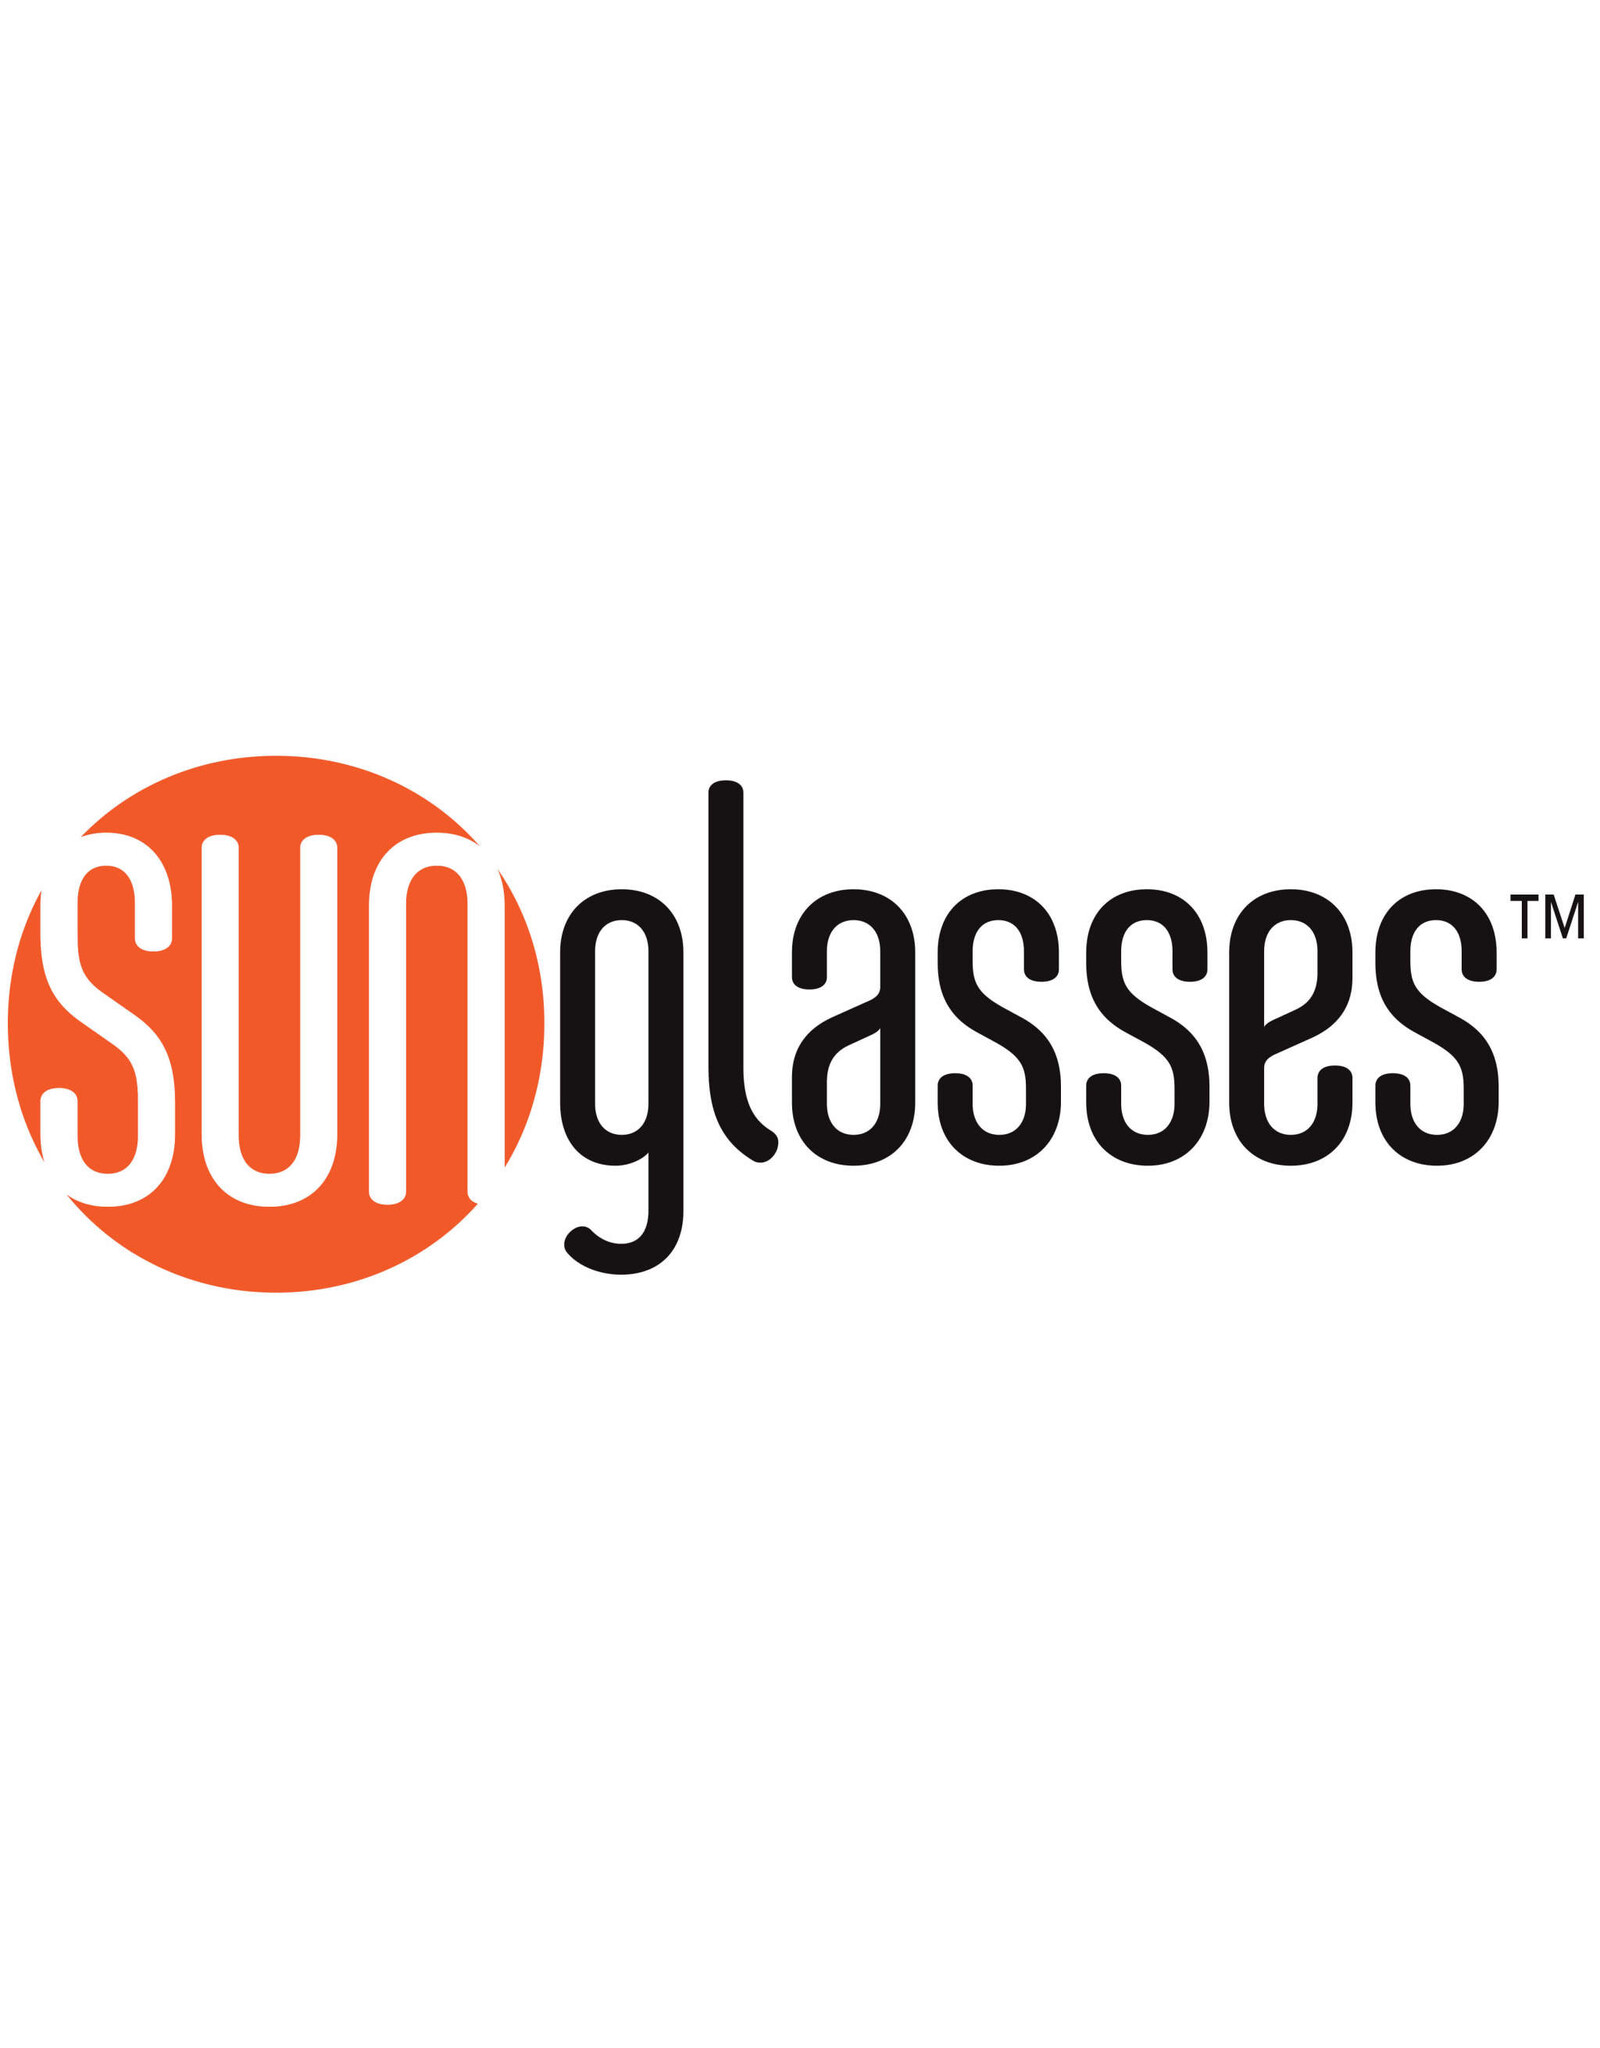 Lunt Lunt  Solar Eclipse Glasses – 10-Pack Premium ISO and CE Certified Lunt Solar Eclipse Glasses